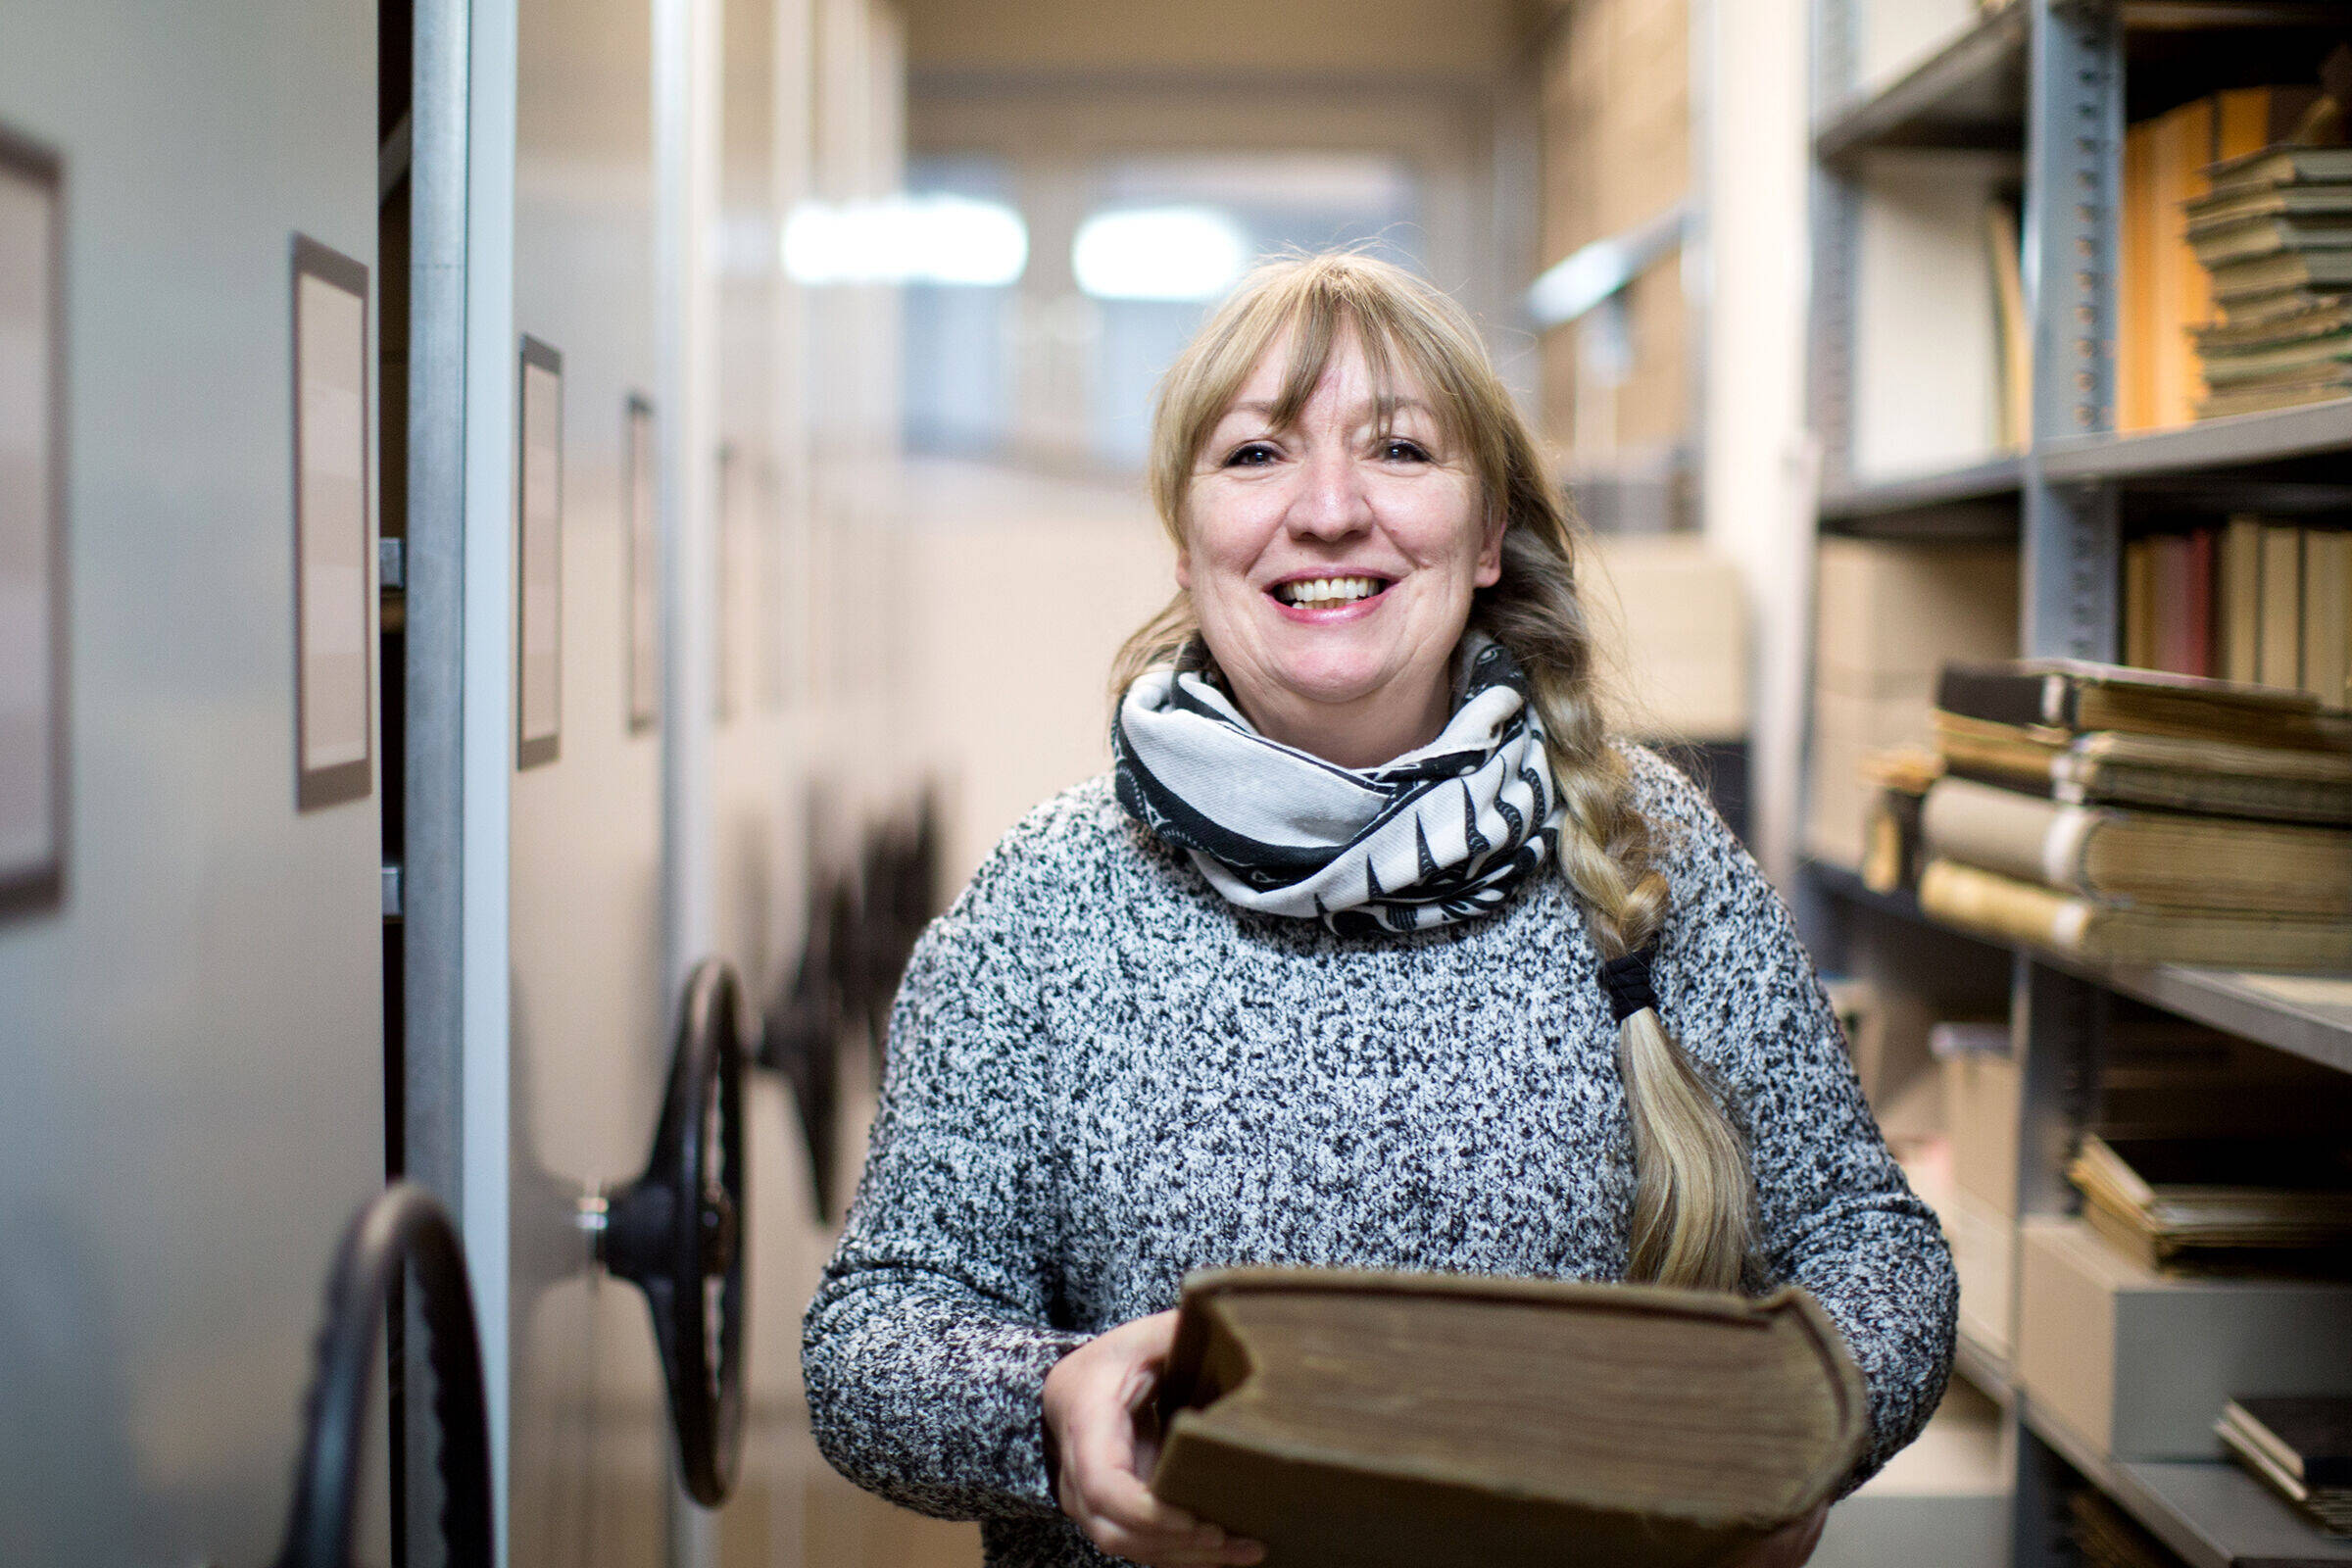 Archivarin Menna Hensmann steht in einem der Gänge des Leeraner Stadtarchivs. In den Händen hält sie ein älteres Buch. Dabei schaut sie lächelnd in die Kamera.